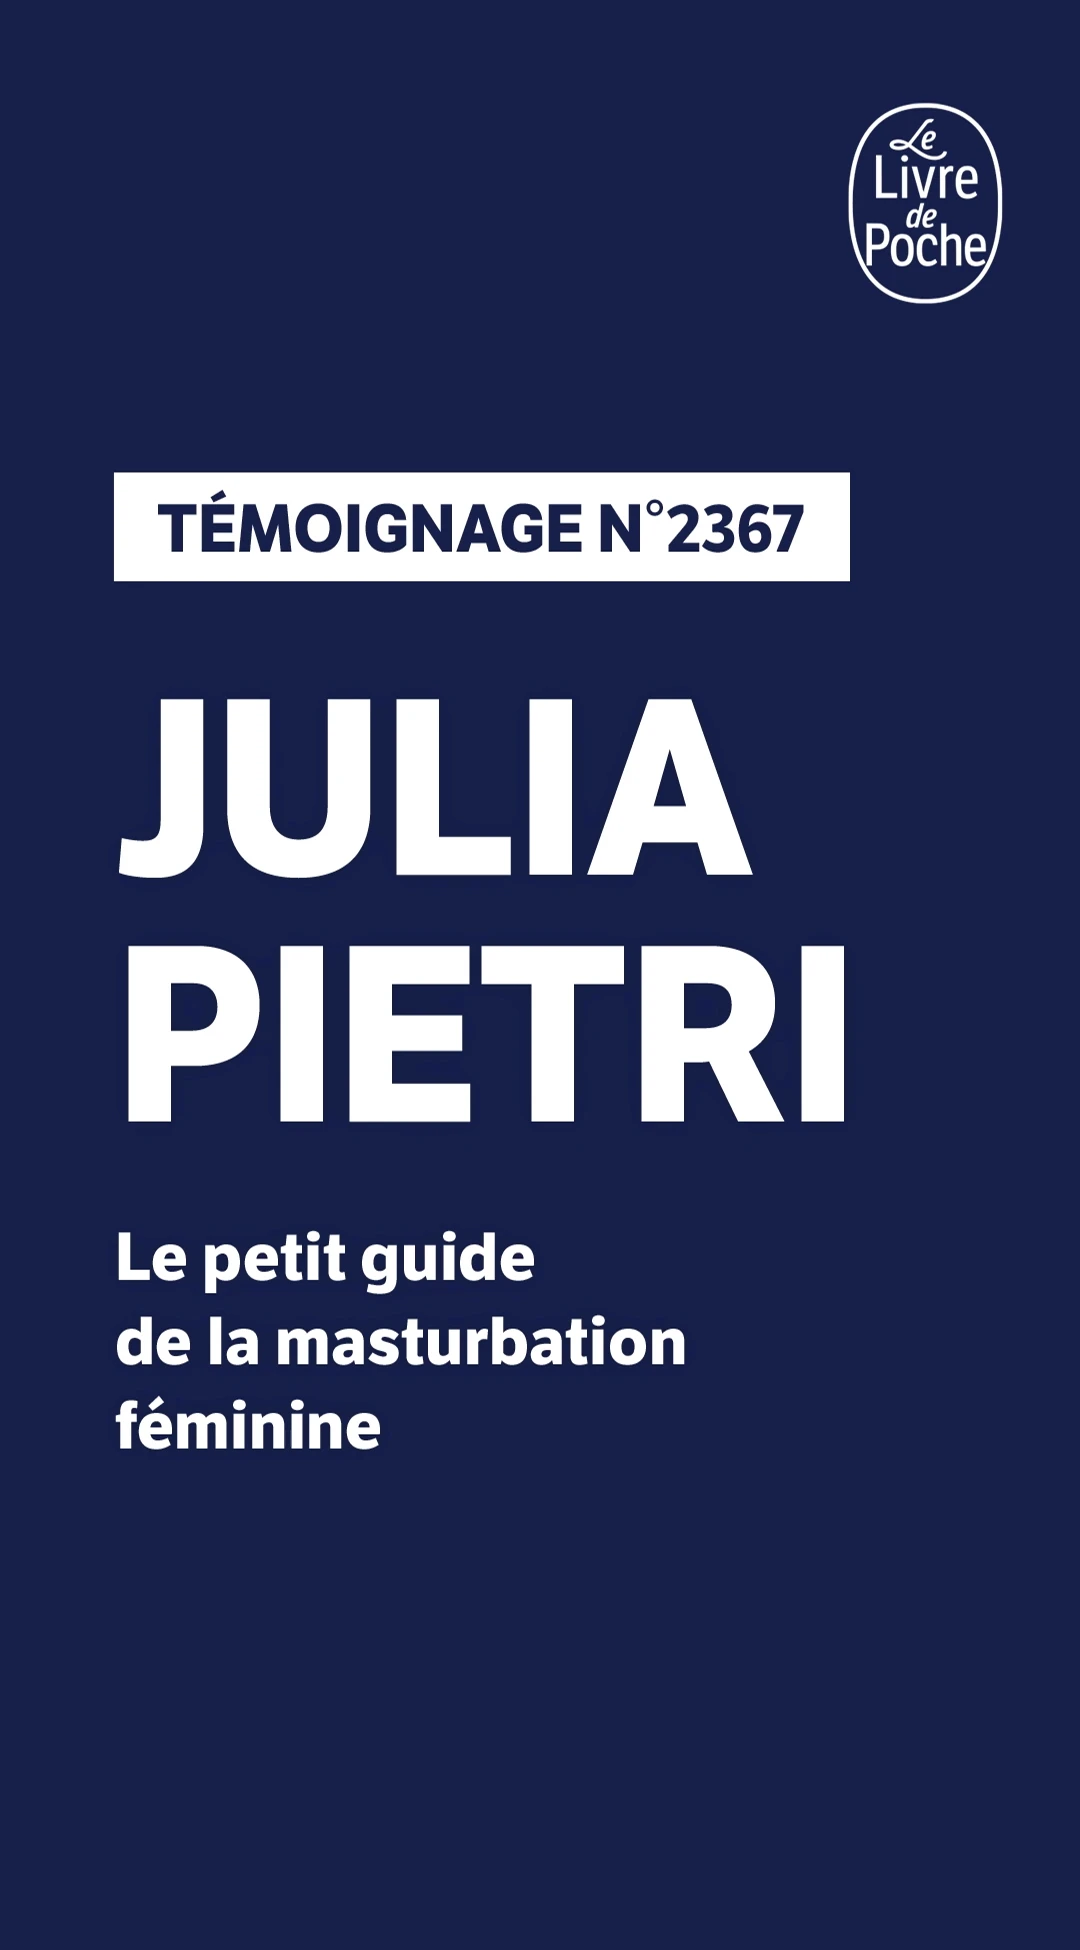 JULIA-PIETRI-OK-GUIDE-MASTURBATION-FEMININE-TEMOIGNAGES